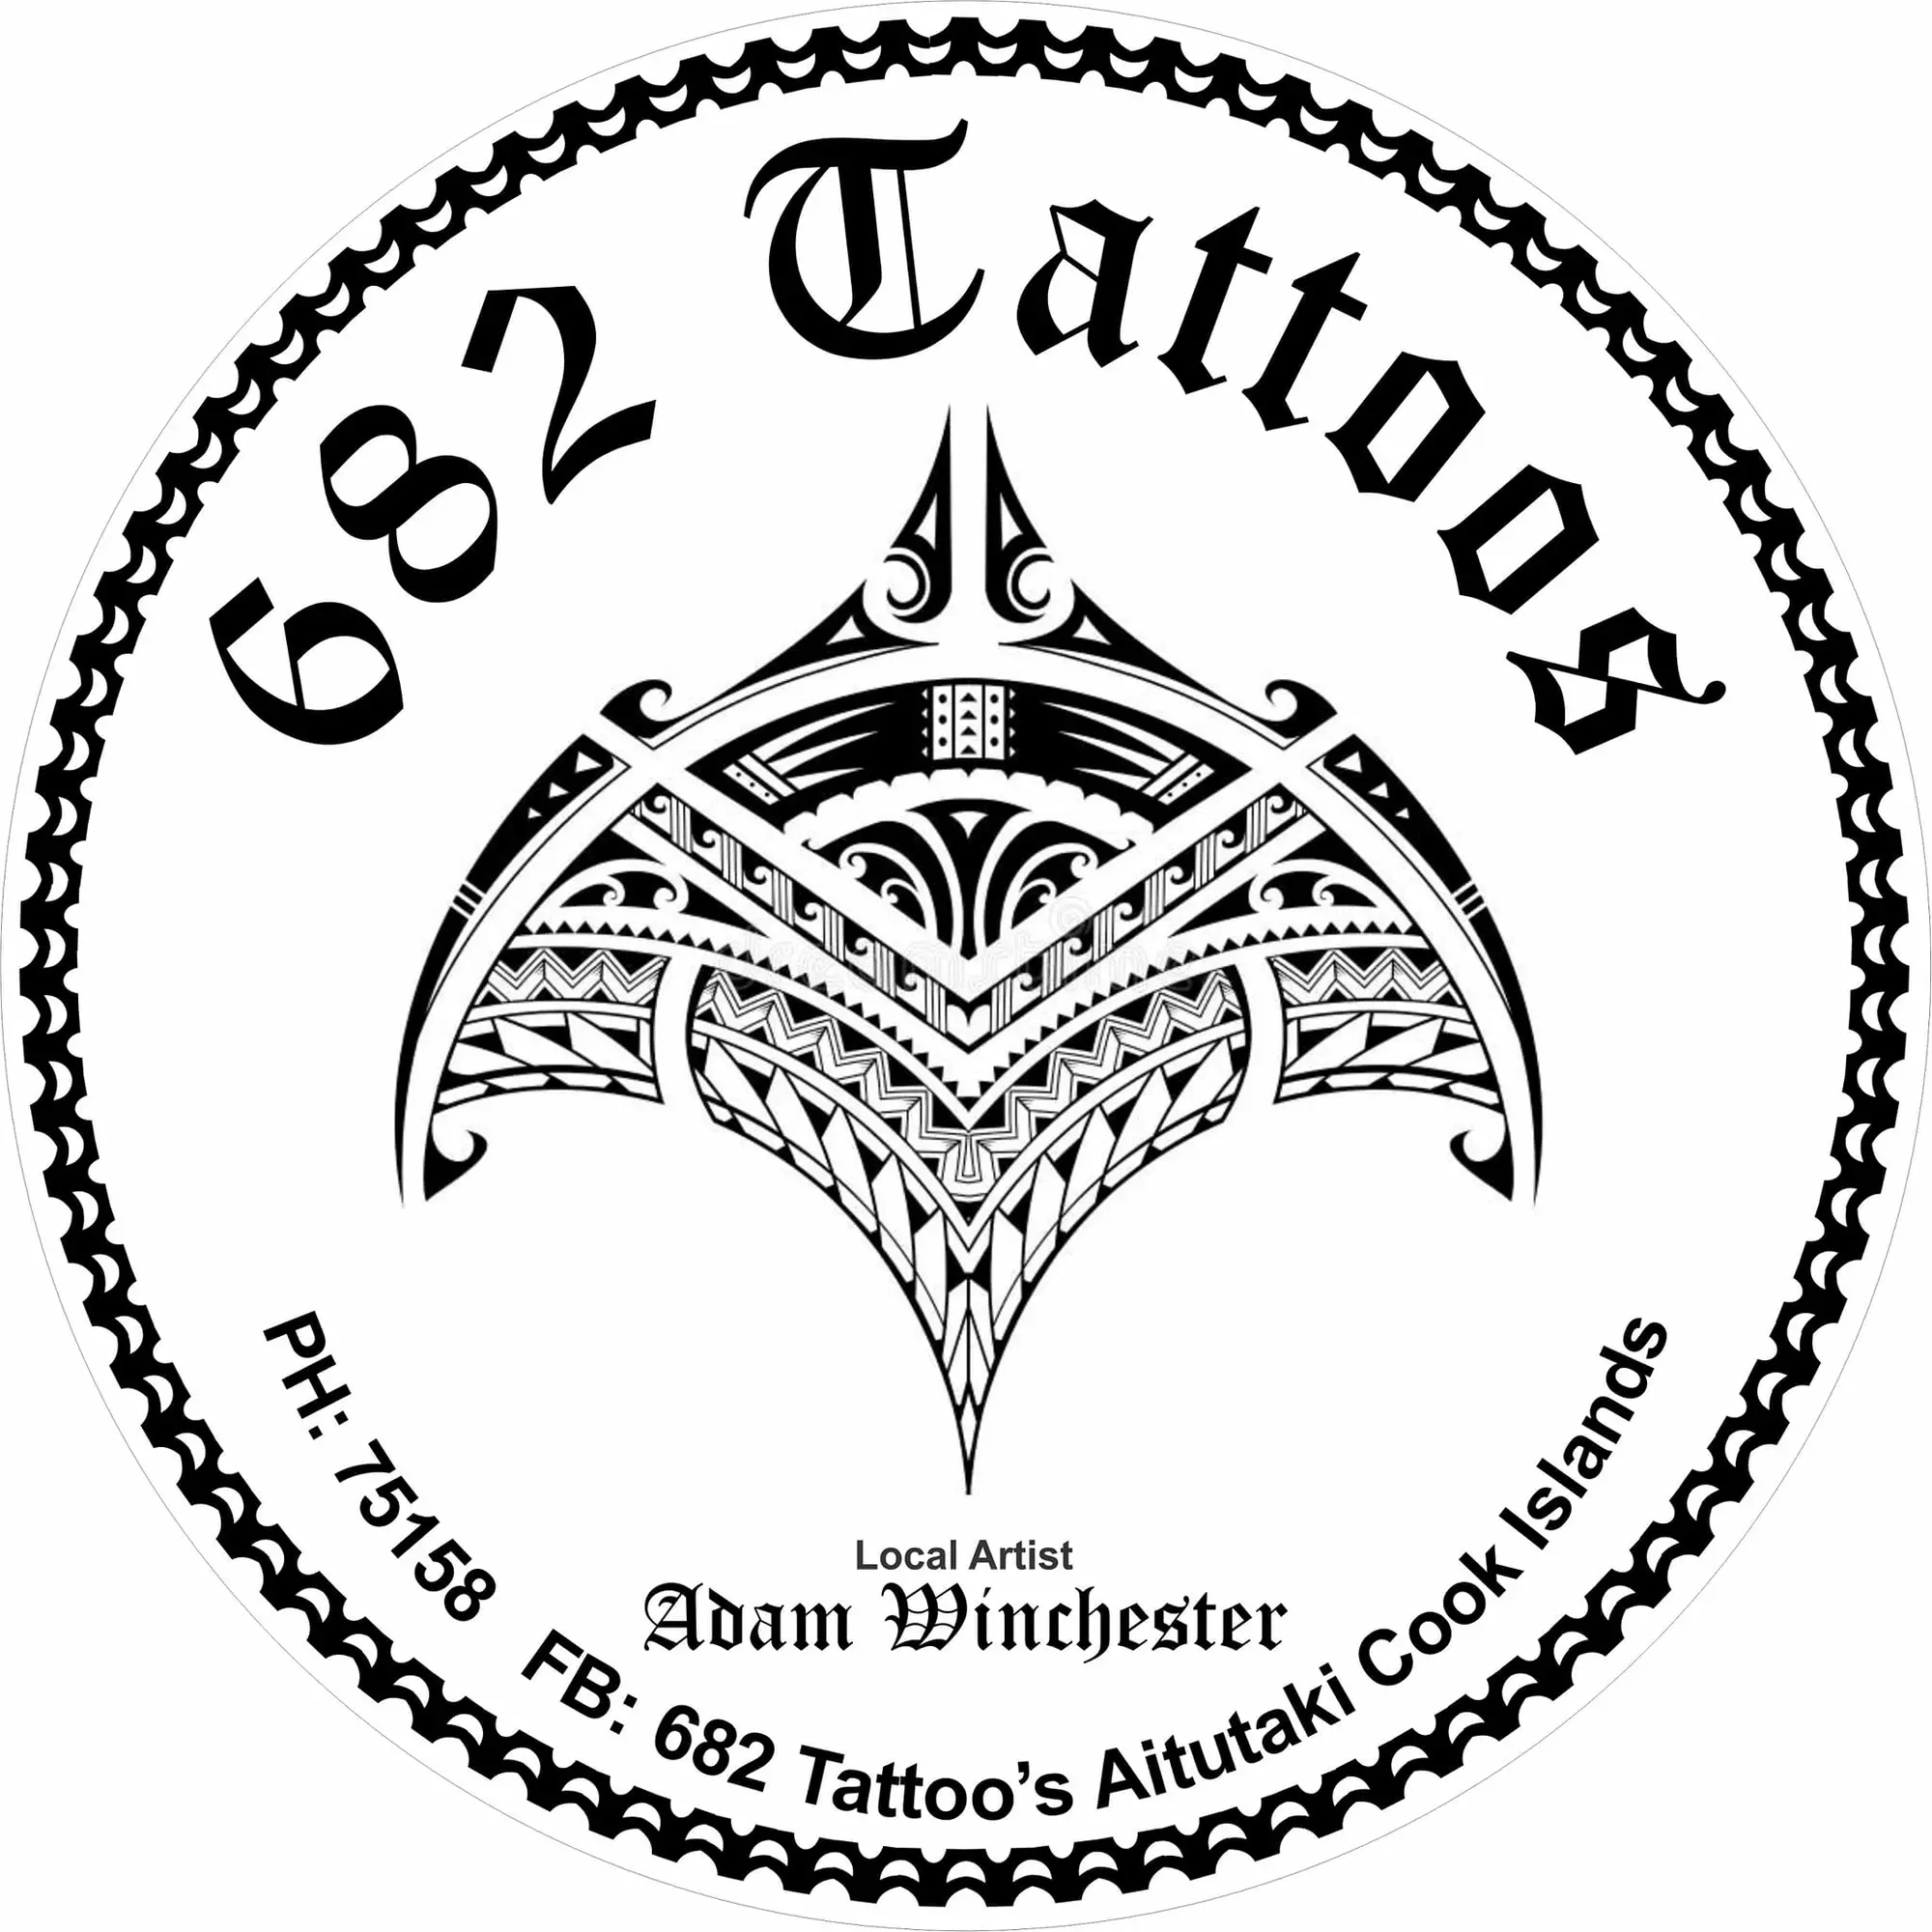 682 Tattoo's